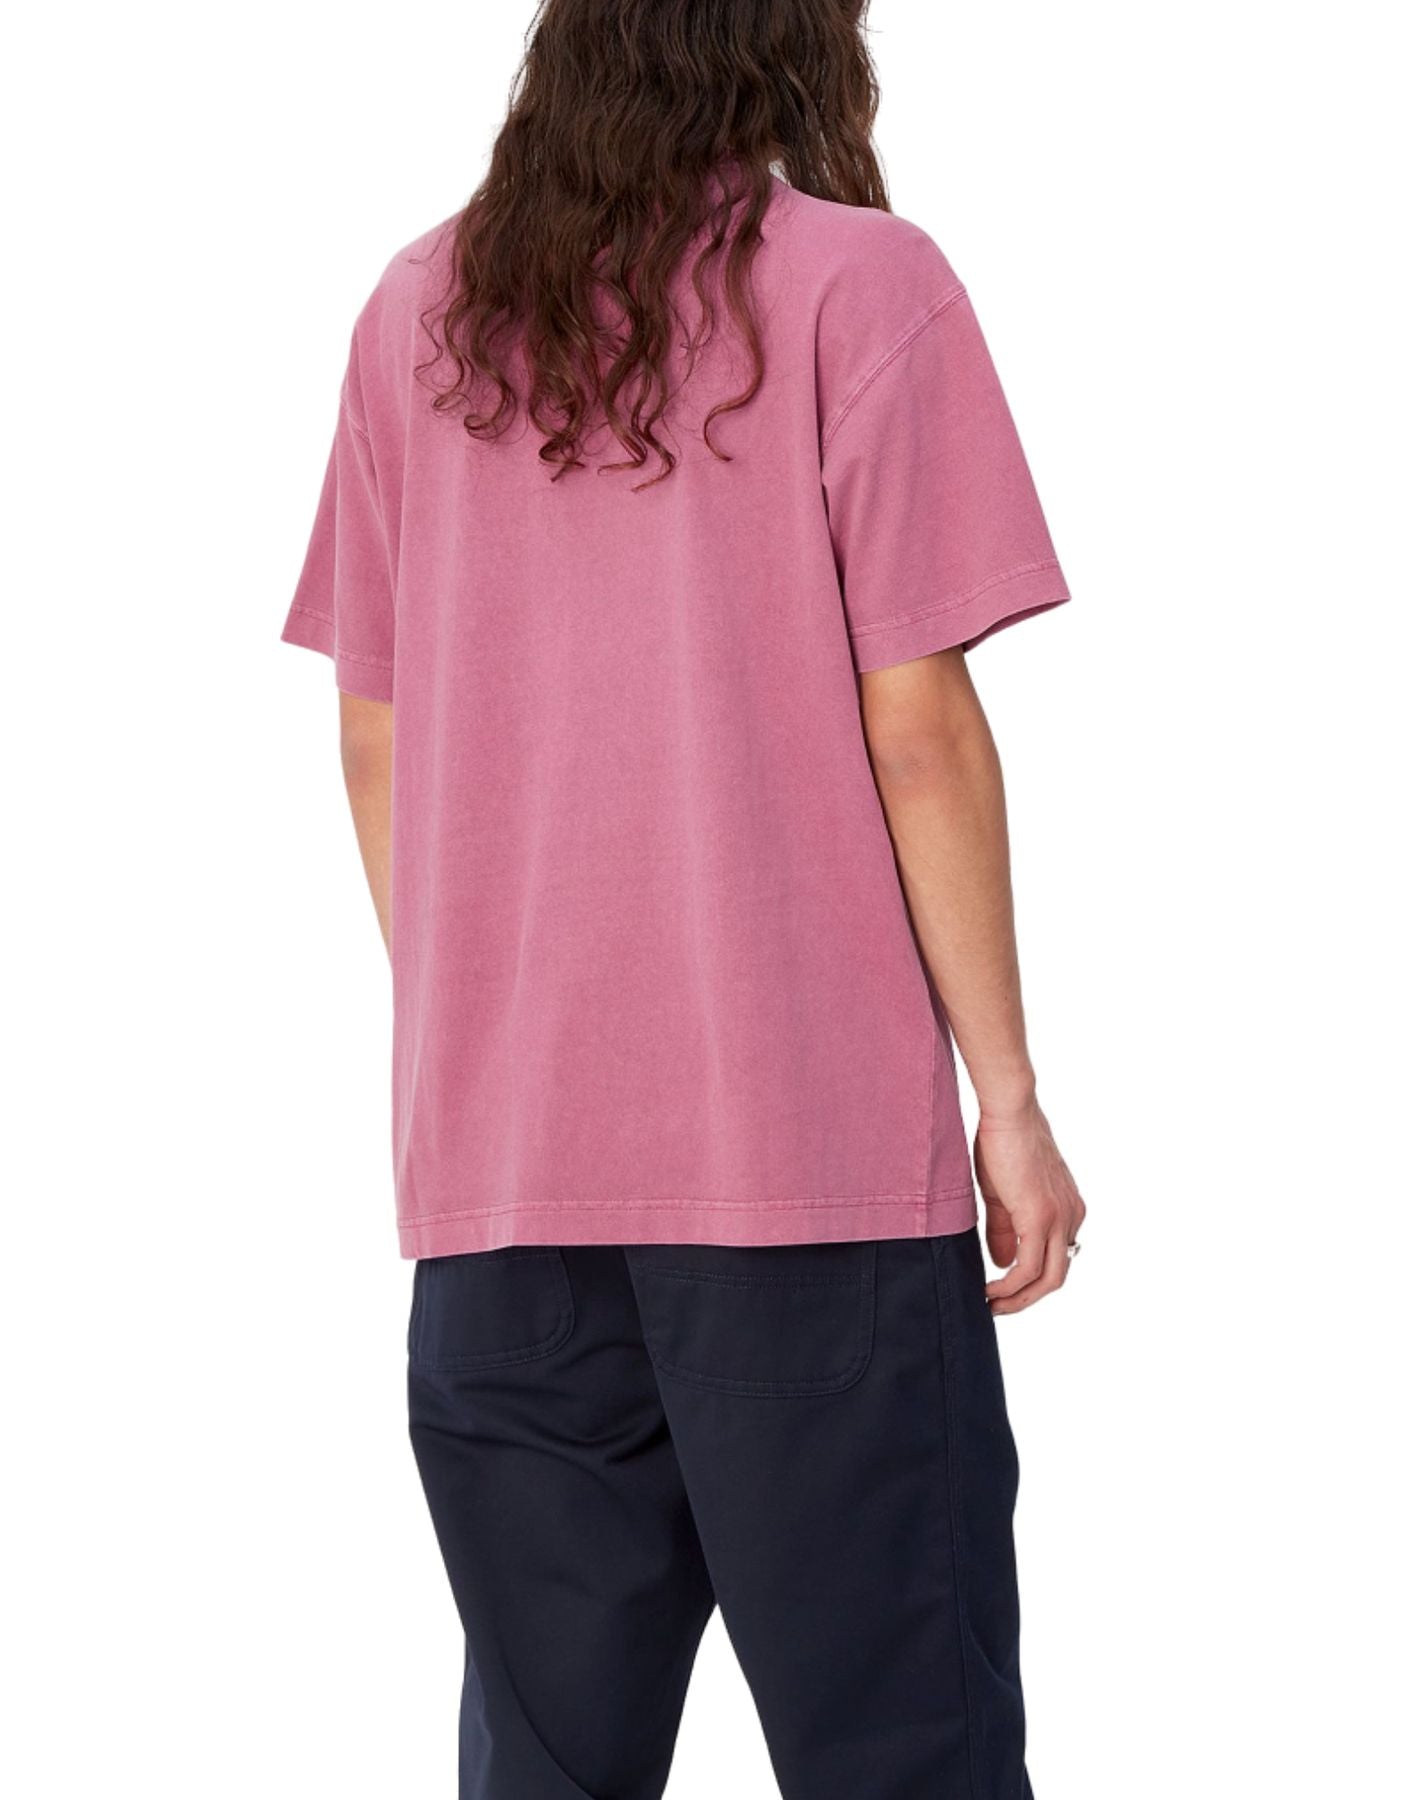 Camiseta hombre i029949 1yt.gd rosa carhartt wip